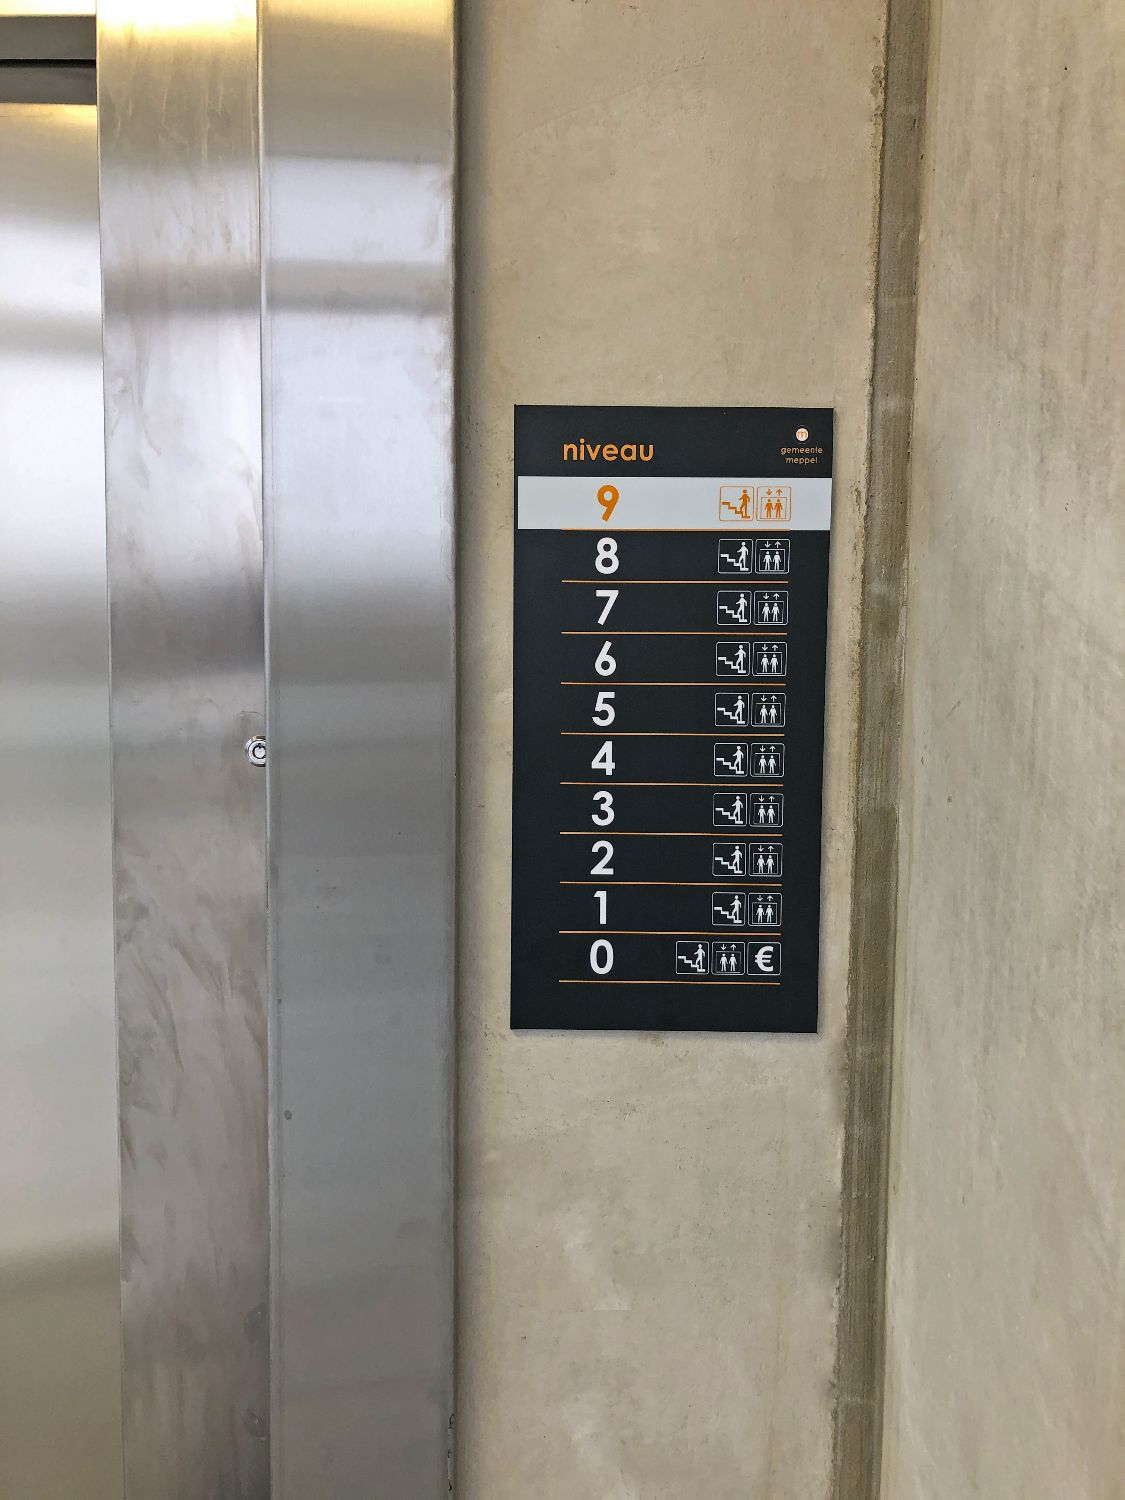 Lift-informatiebord in parkeergarage Kromme Elleboog in Gemeente Meppel.